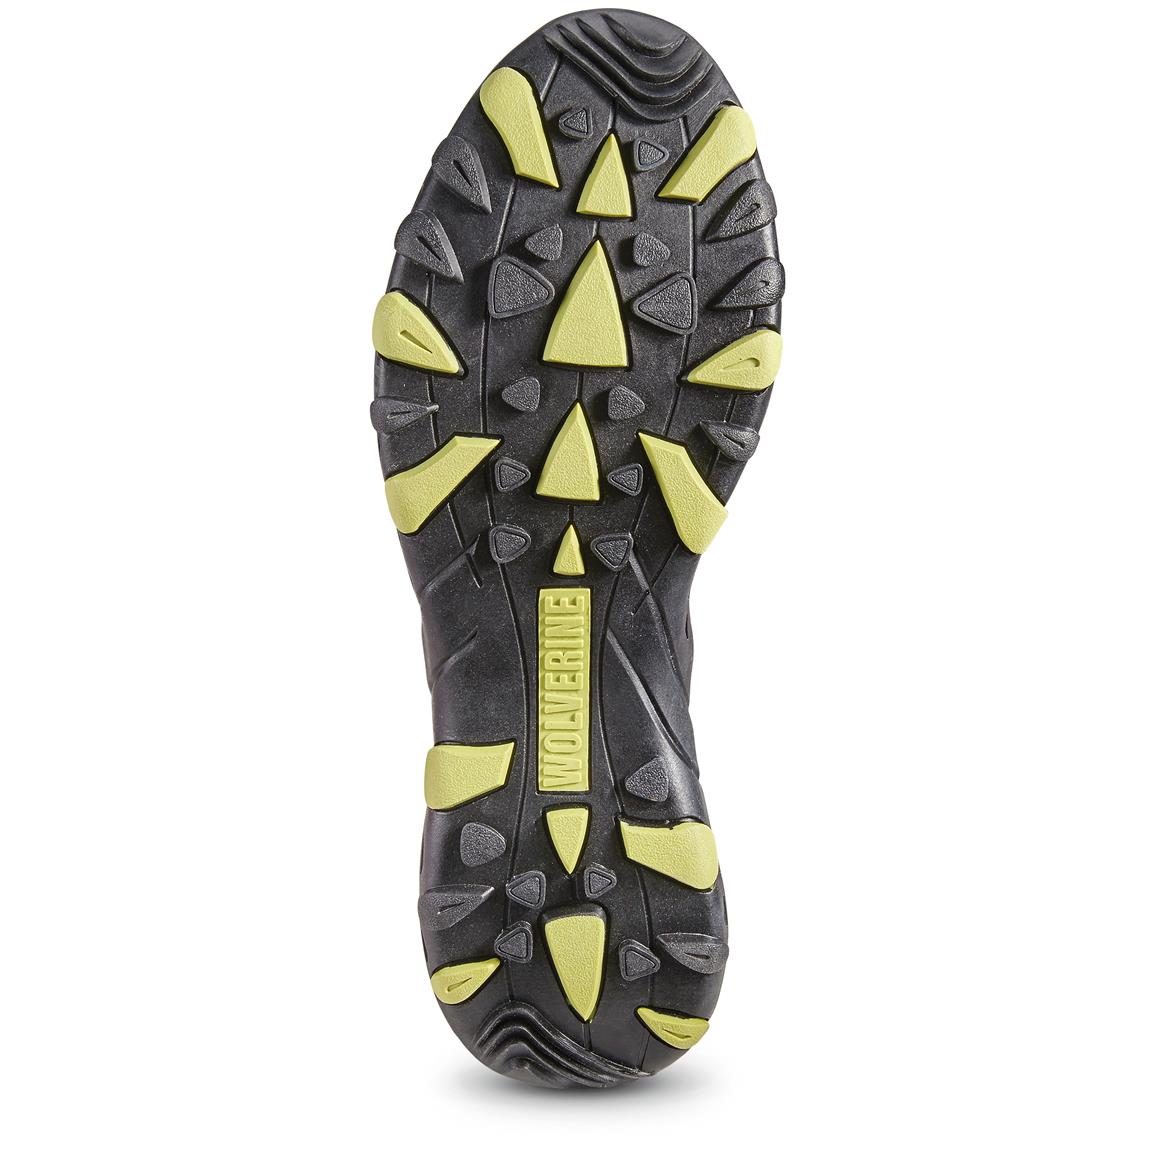 wolverine muir waterproof hiking shoe